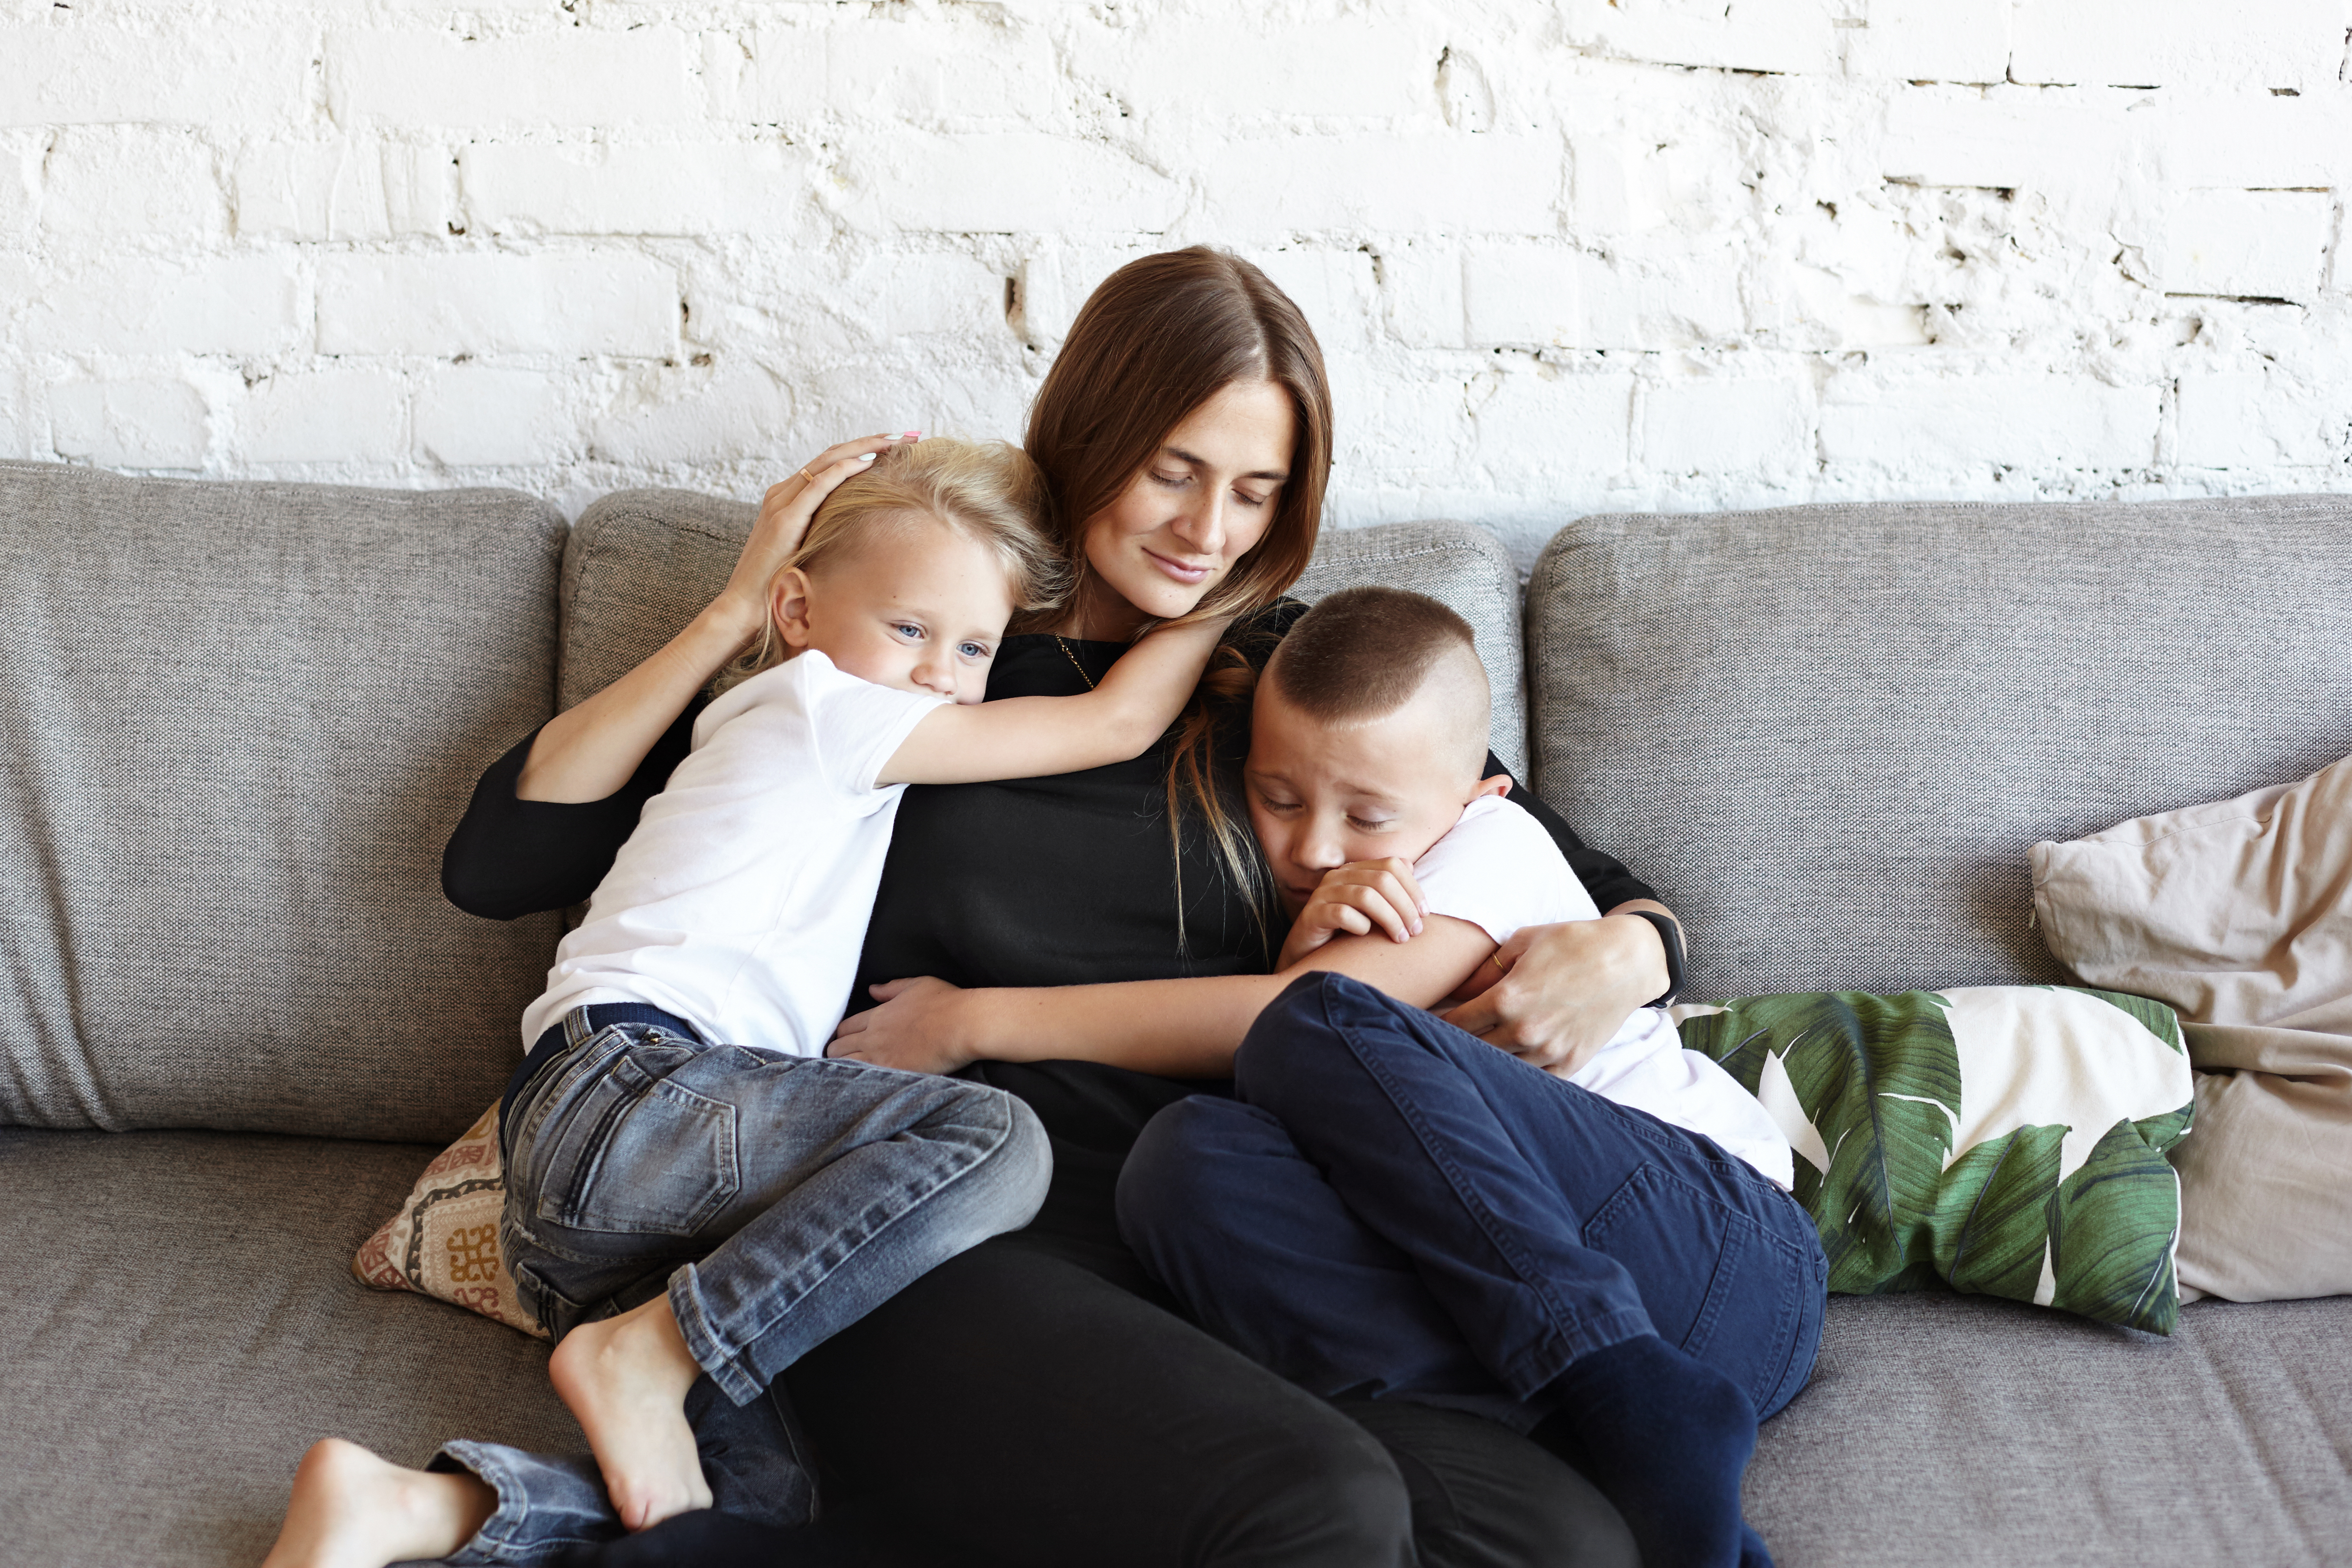 Una madre y sus hijos. | Foto: Shutterstock